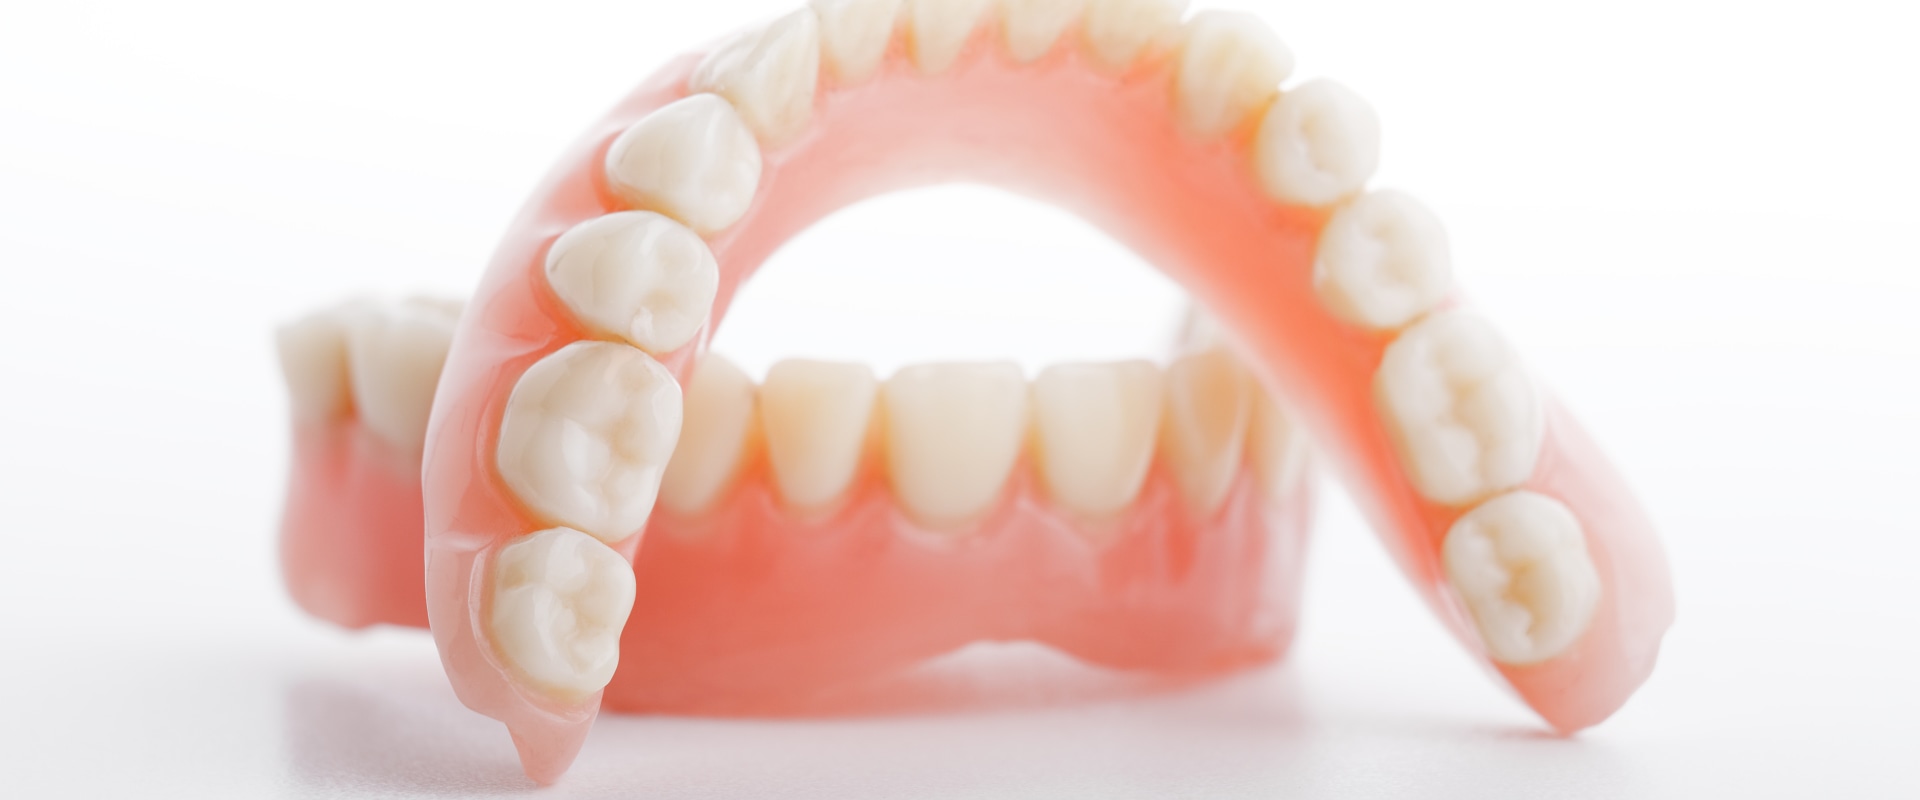 Does general dentistry do dentures?